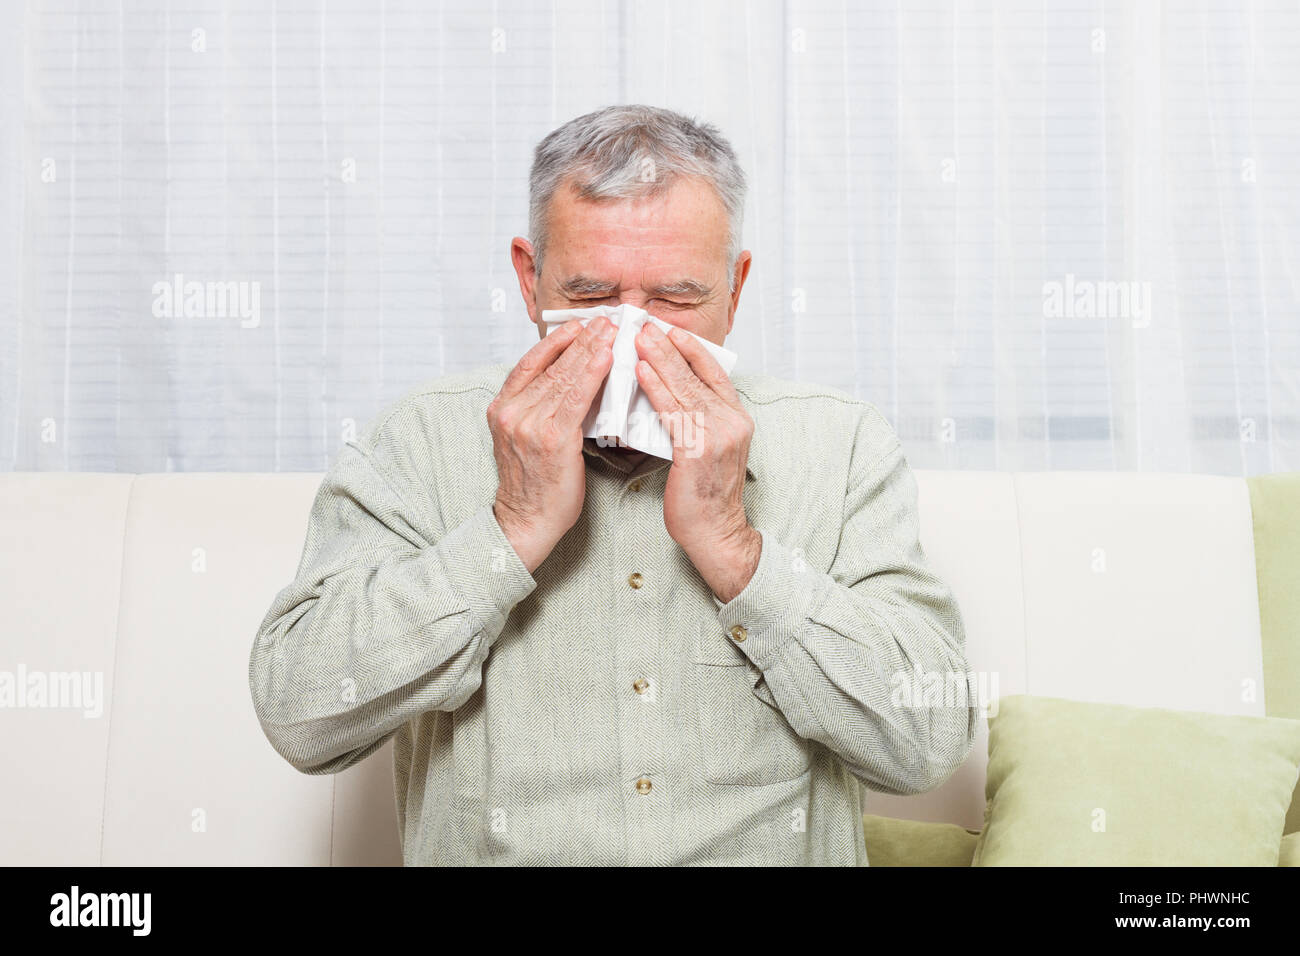 Senior man is sneezing into handkerchief. Stock Photo